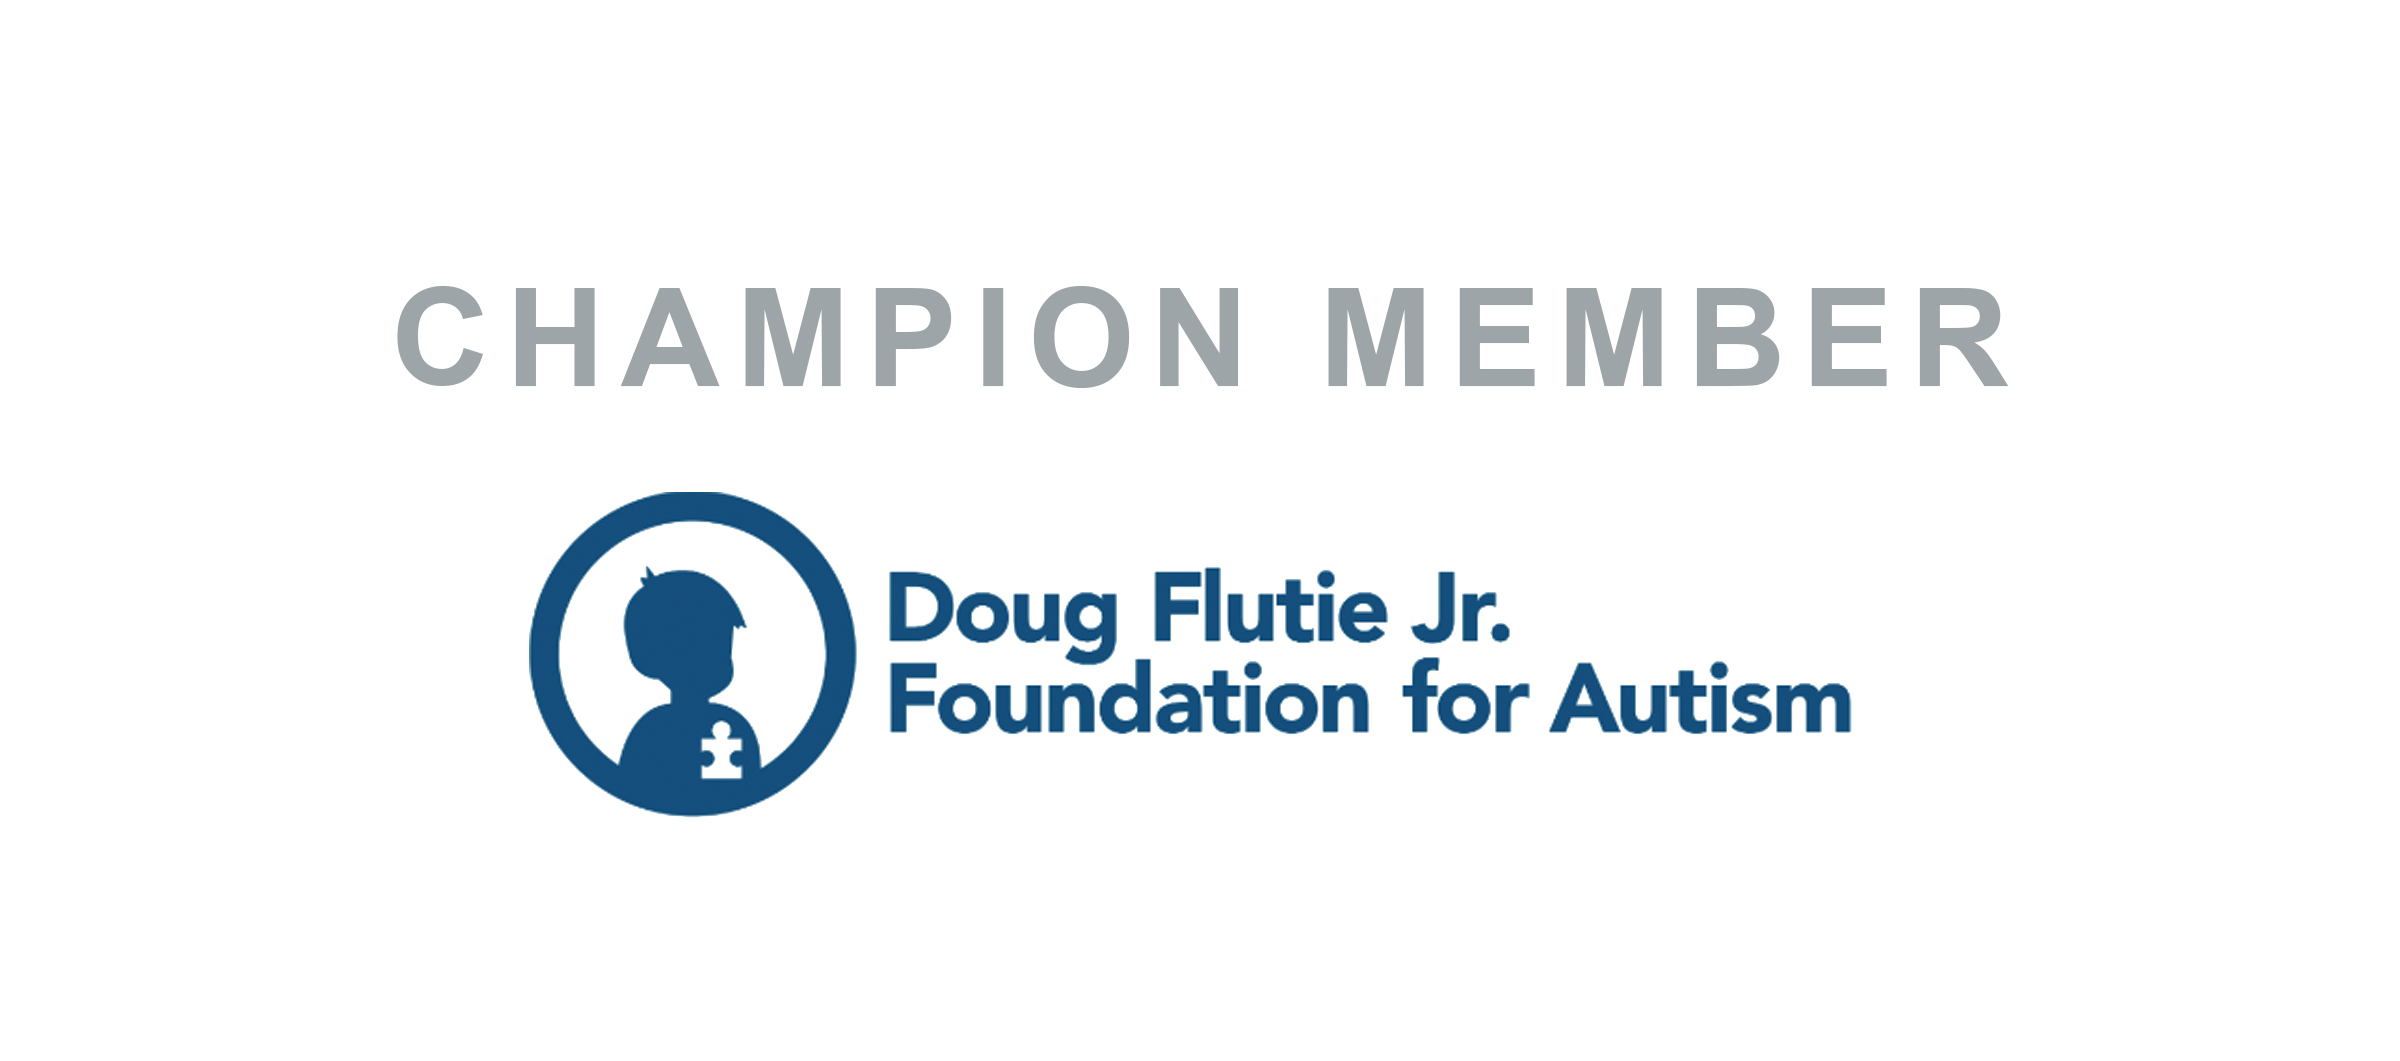  The Doug Flutie Foundation